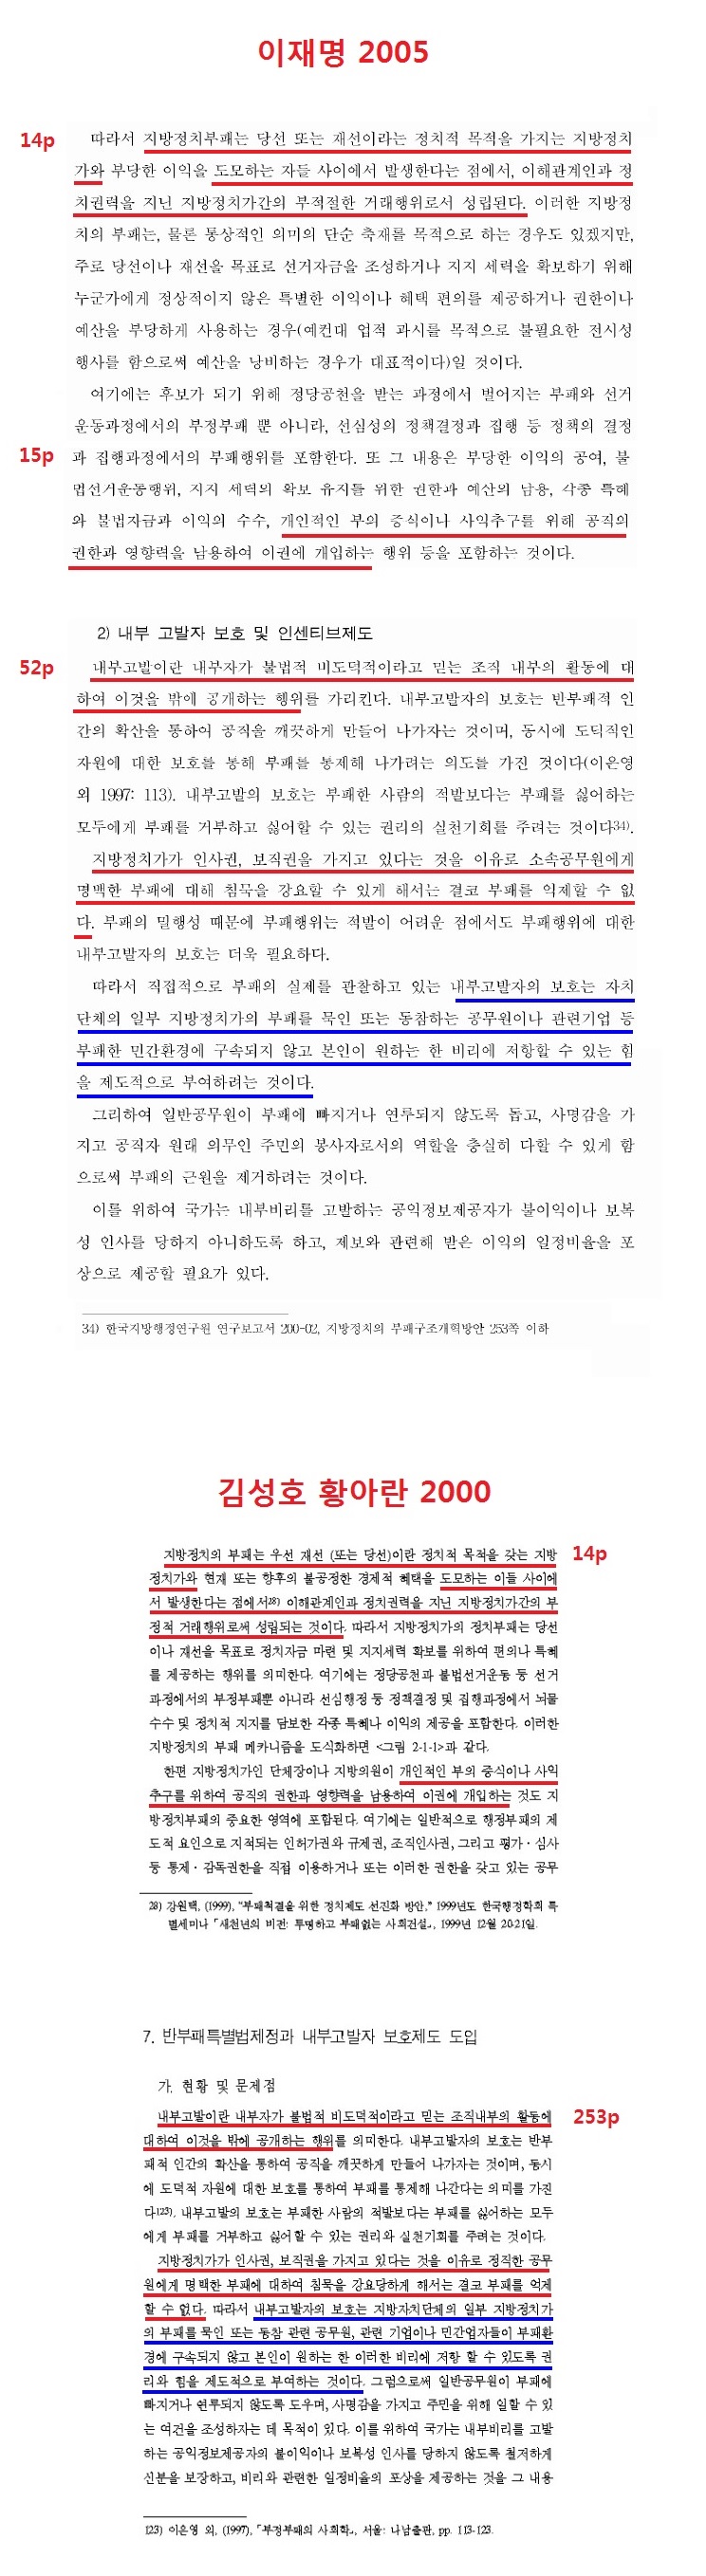 이재명(2005)이 김성호 외(2000)를 표절한 혐의